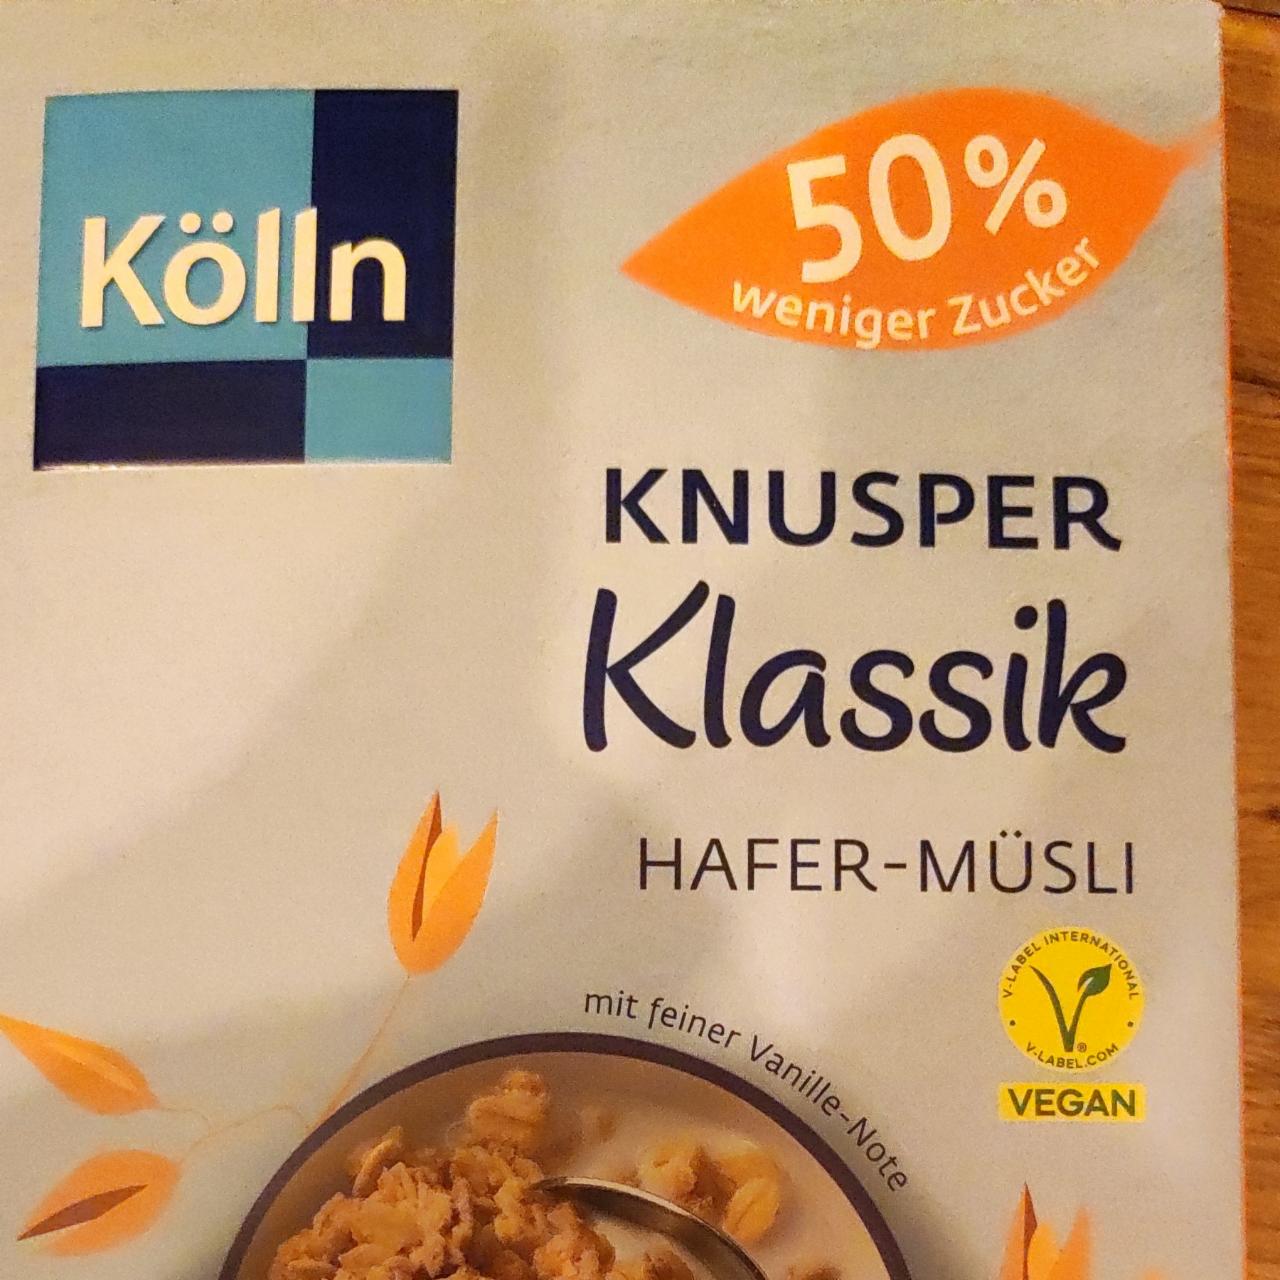 Fotografie - Knusper Klassik Hafer-Müsli 50% weniger zucker Kölln